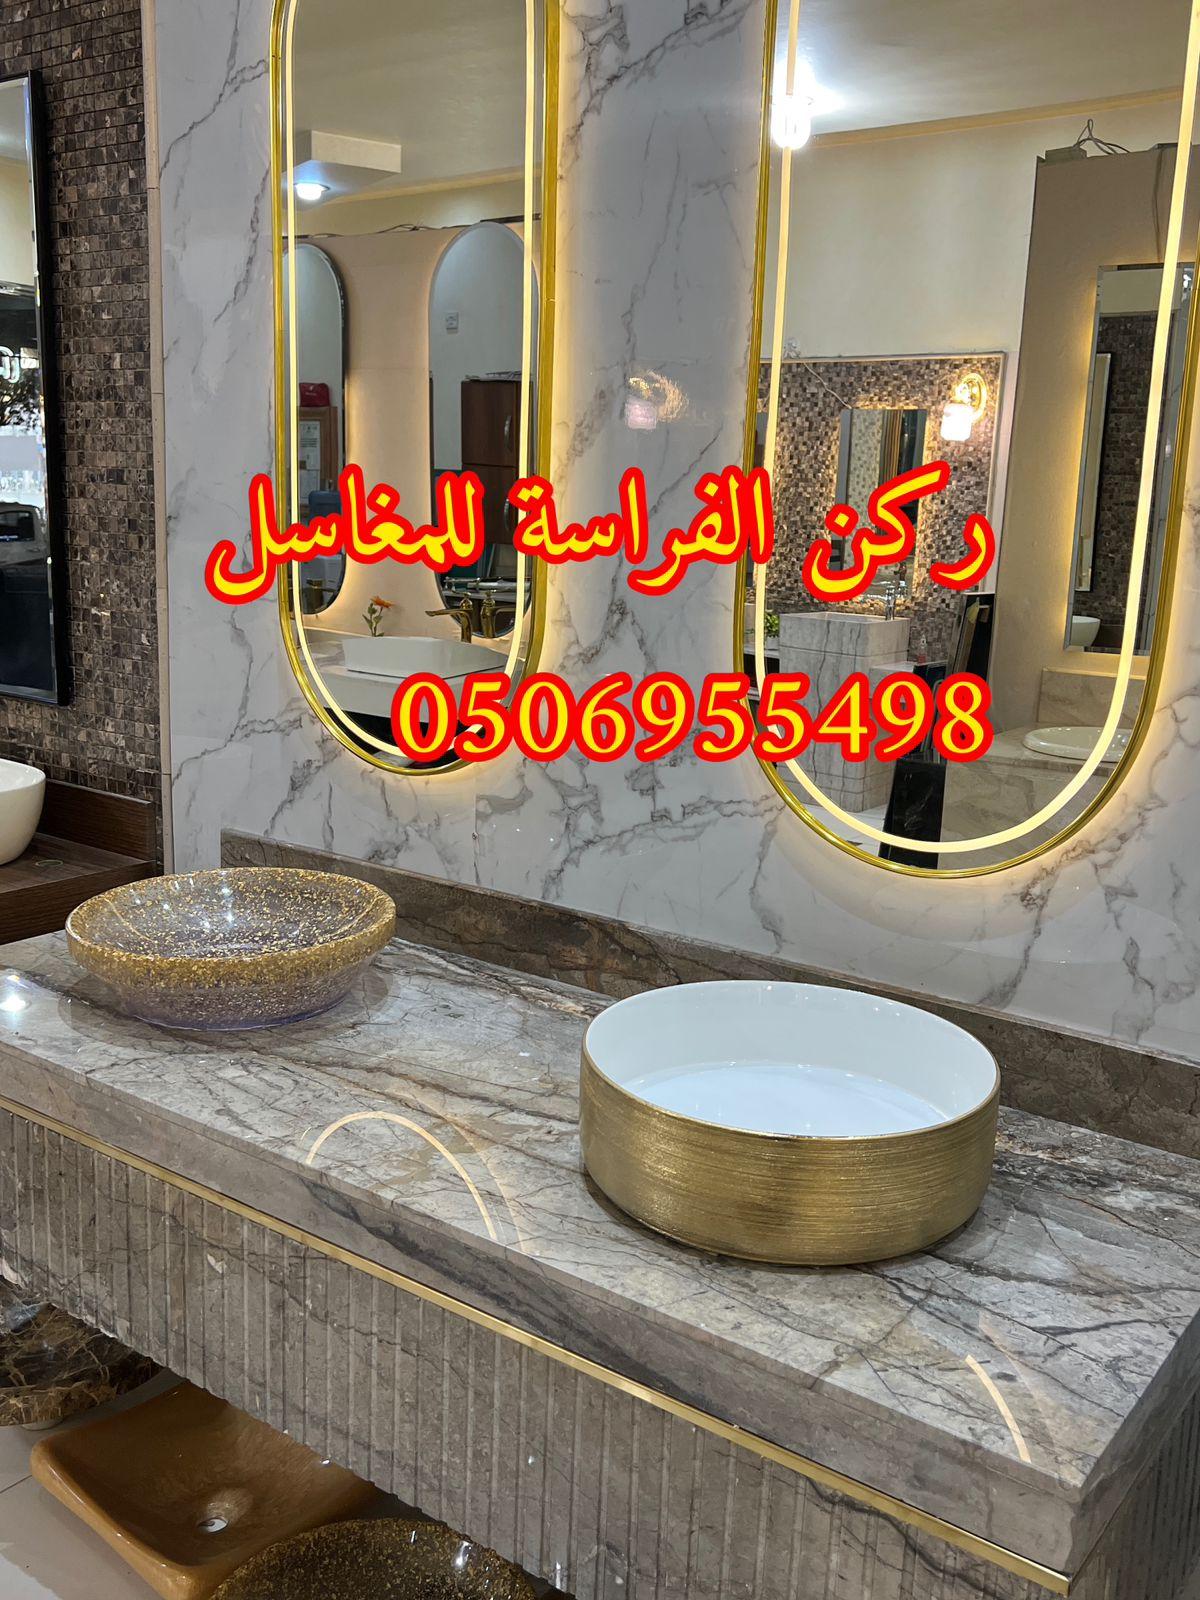 تفصيل احواض مغاسل رخام في الرياض,0506955498 919516311